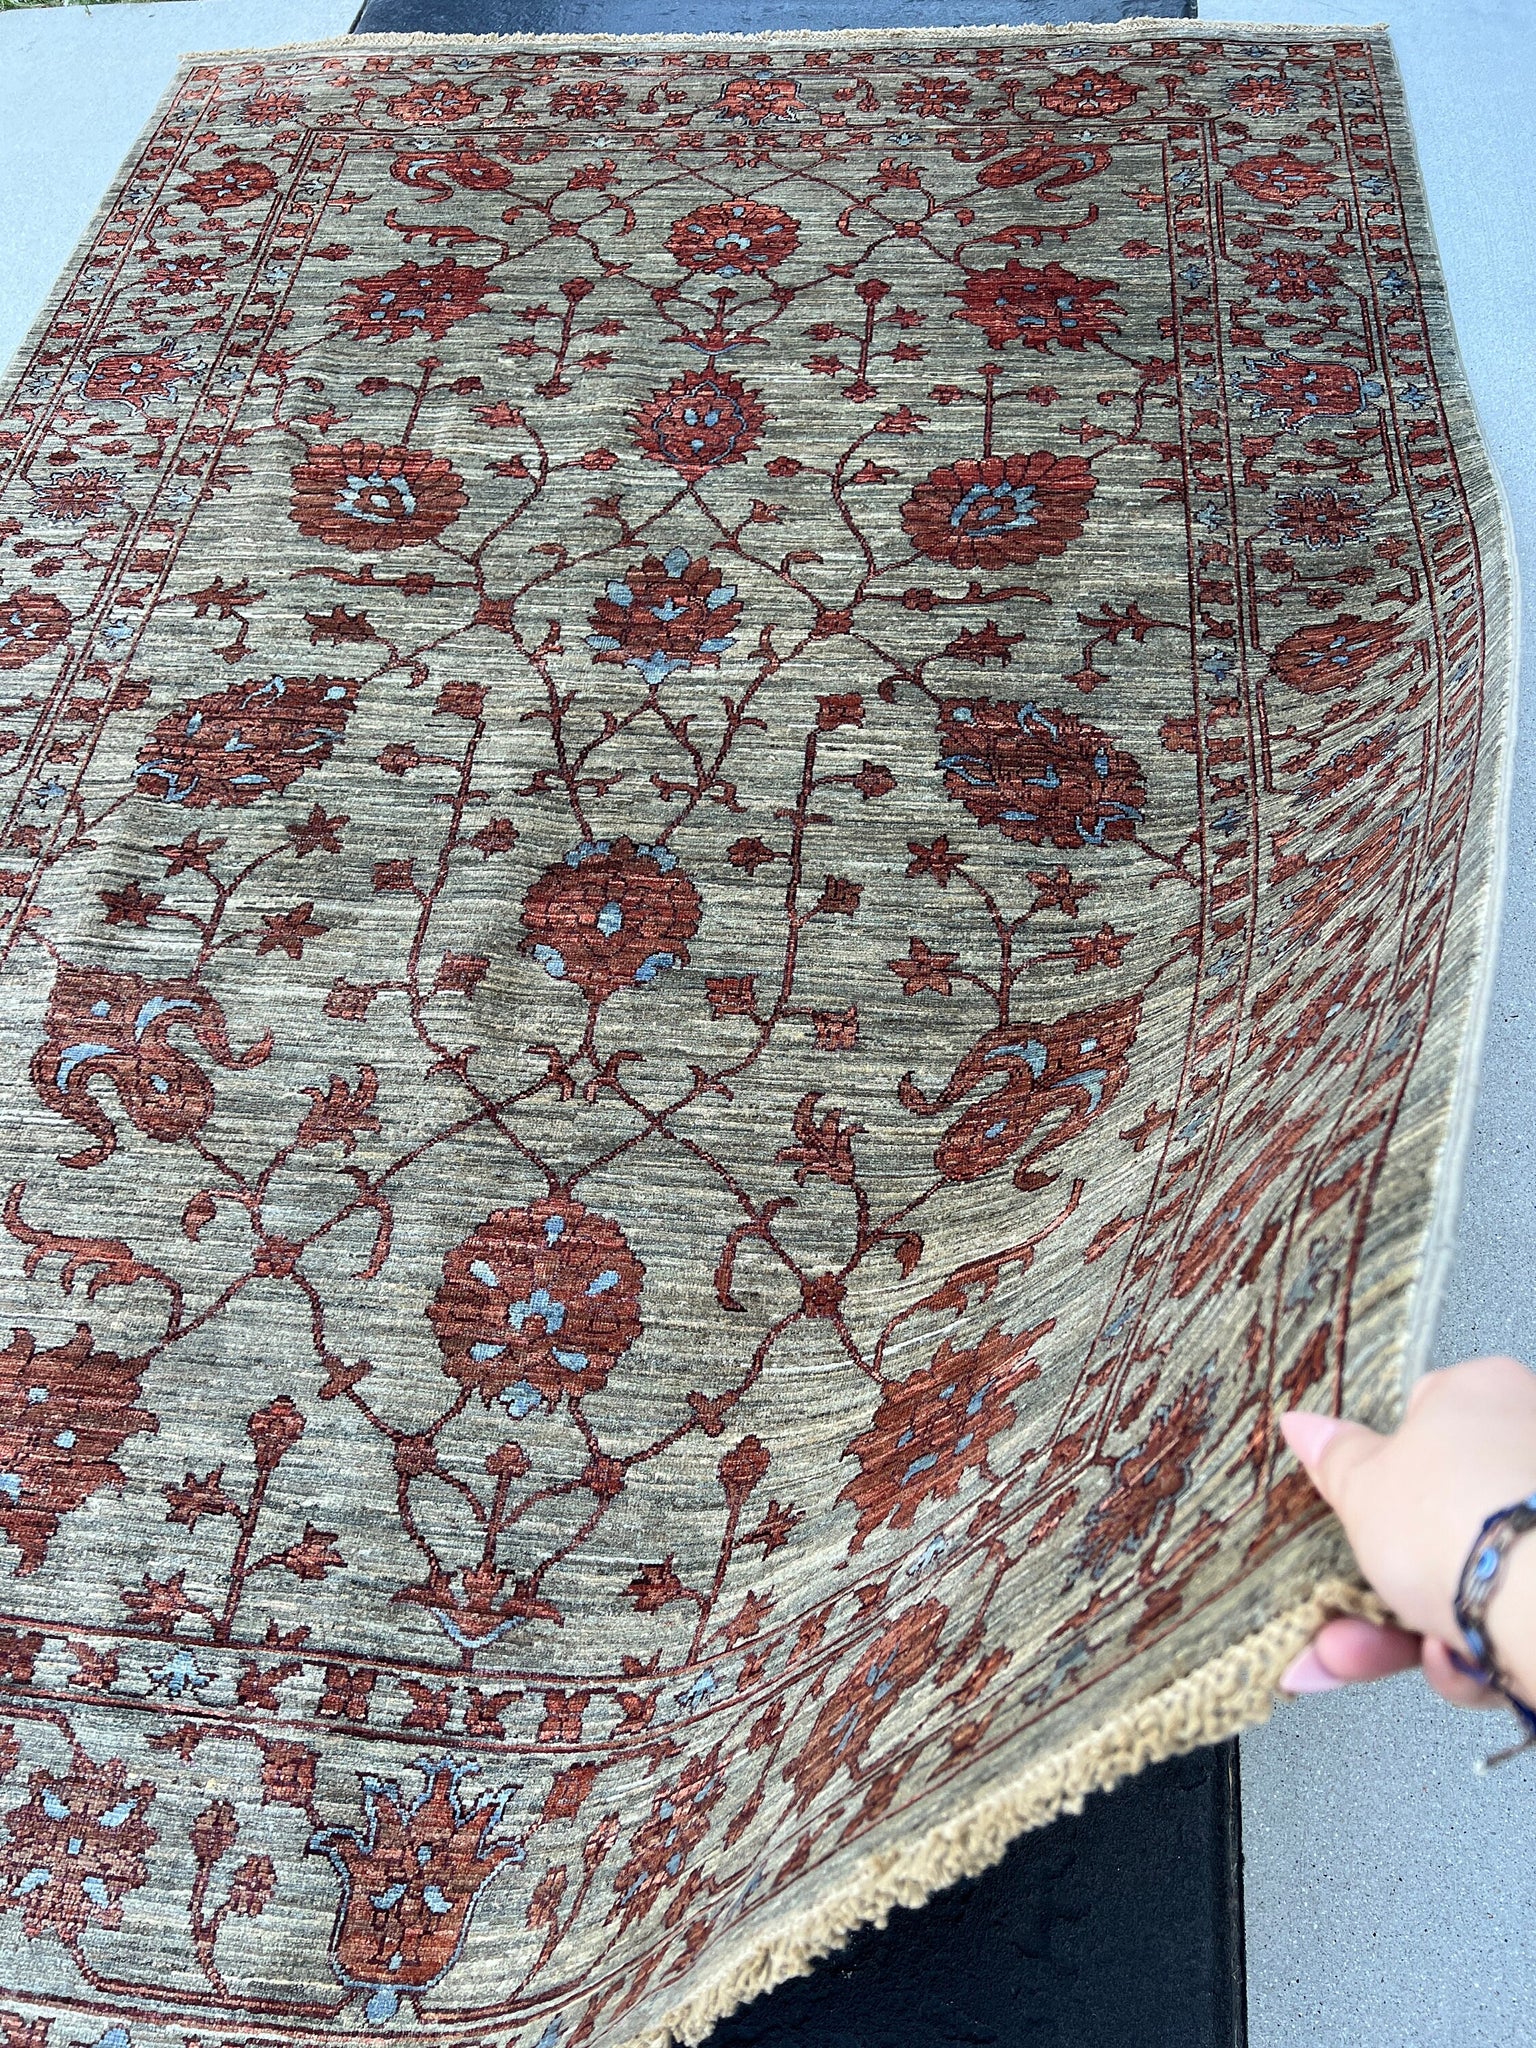 6x8 (180x245) Handmade Afghan Rug | Chocolate Brown Beige Blood Red Grey Black Denim Blue | Turkish Persian Oriental Boho Oushak Wool